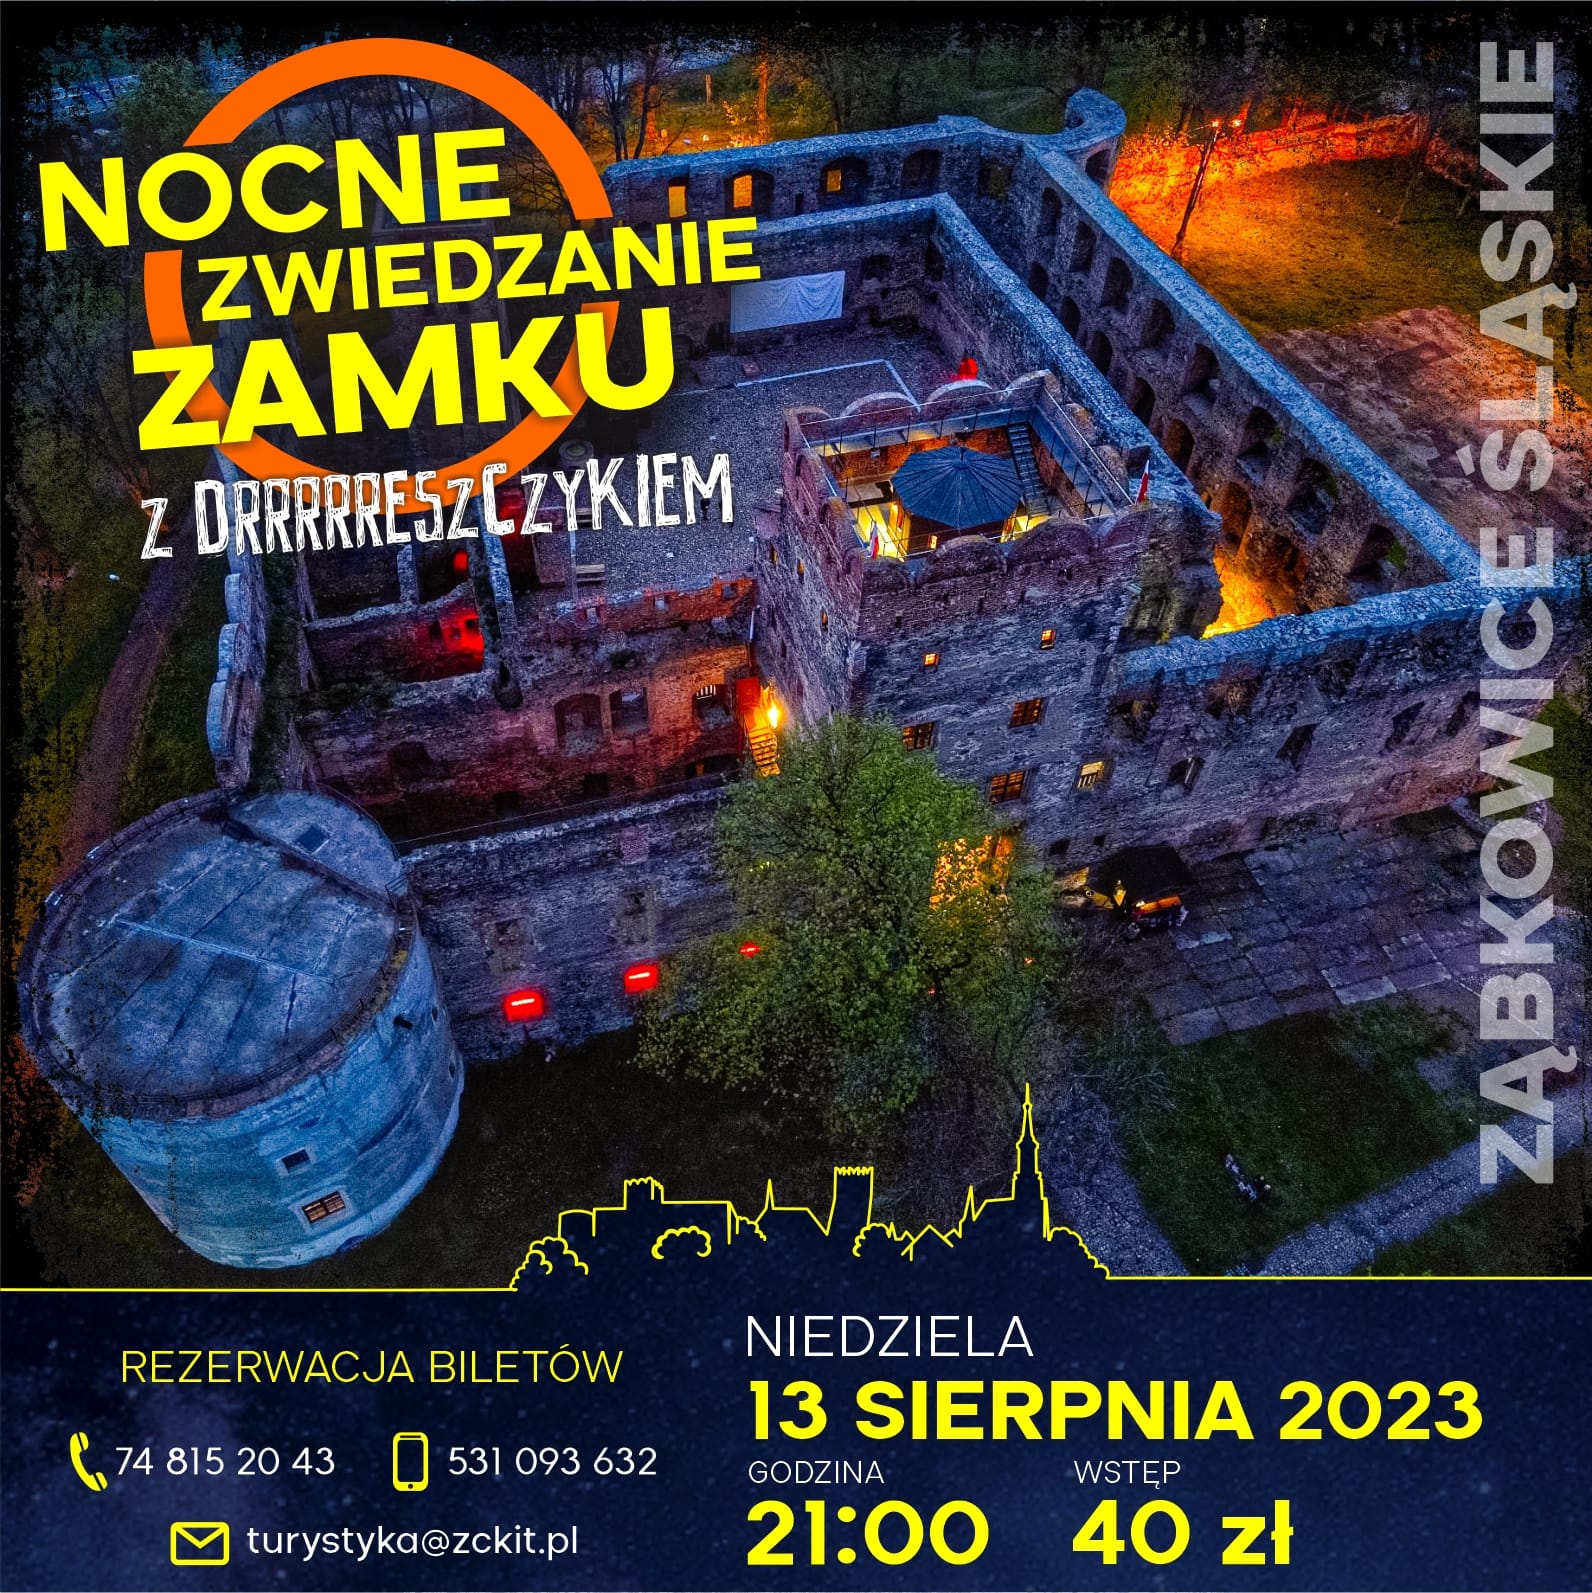 Plakat informacyjny o Nocnym Zwiedzaniu Zamku w Ząbkowicach Śląskich 13 sierpnia 2023 o godzinie 21:00. Na plakacie znajduje się zdjęcie zamku nocą, oświetlonego od wewnątrz.